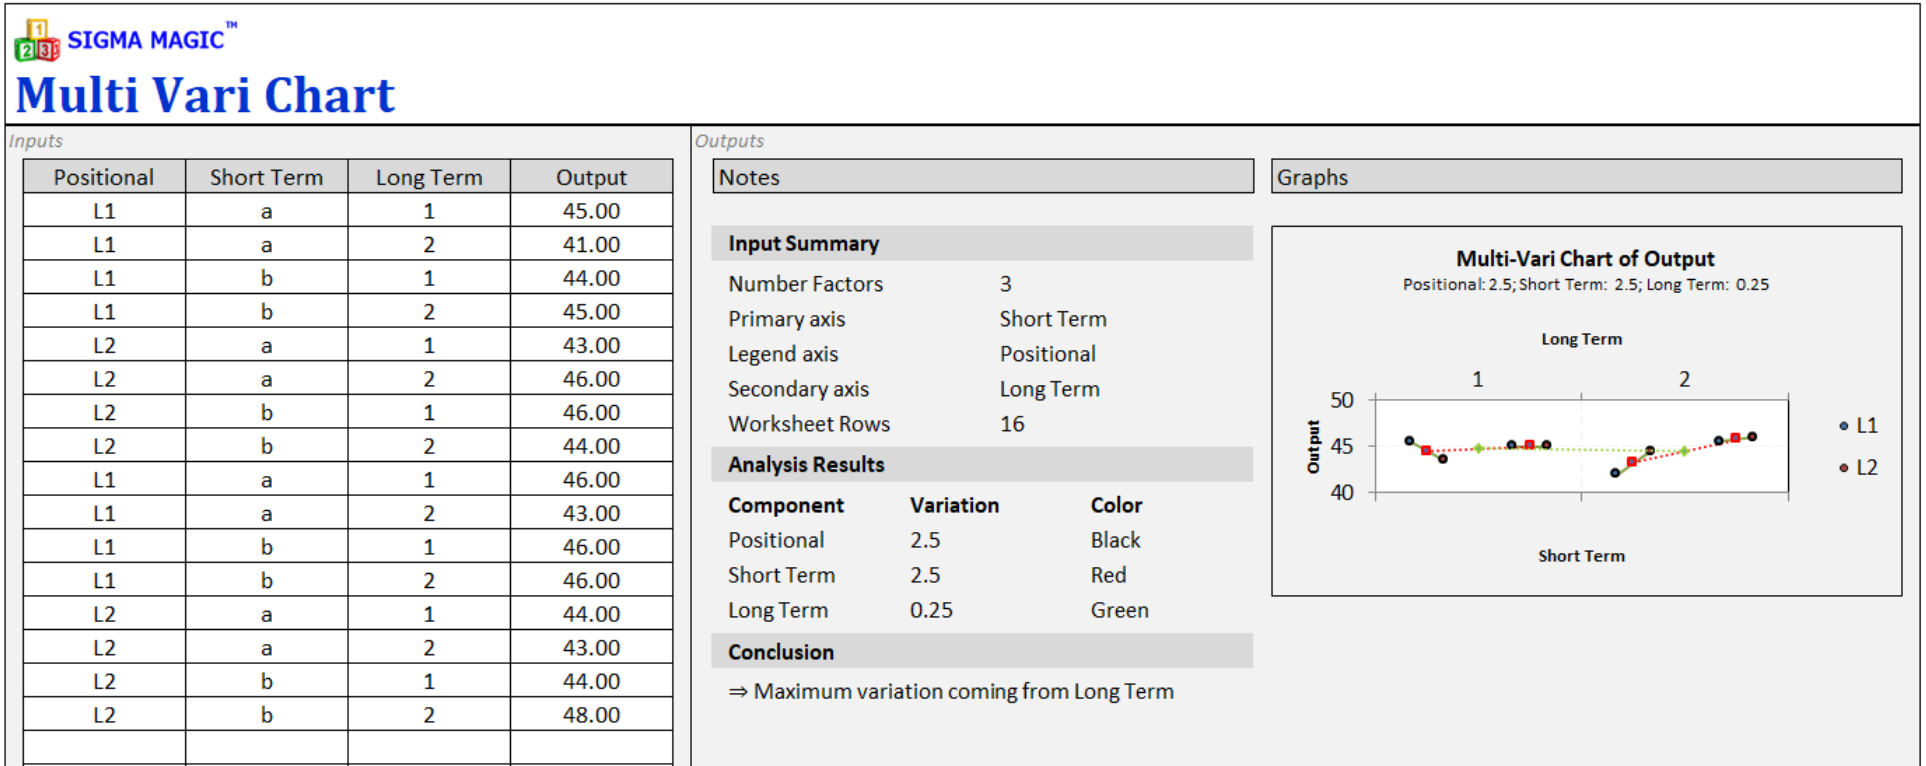 Multi Vari Chart Excel Template